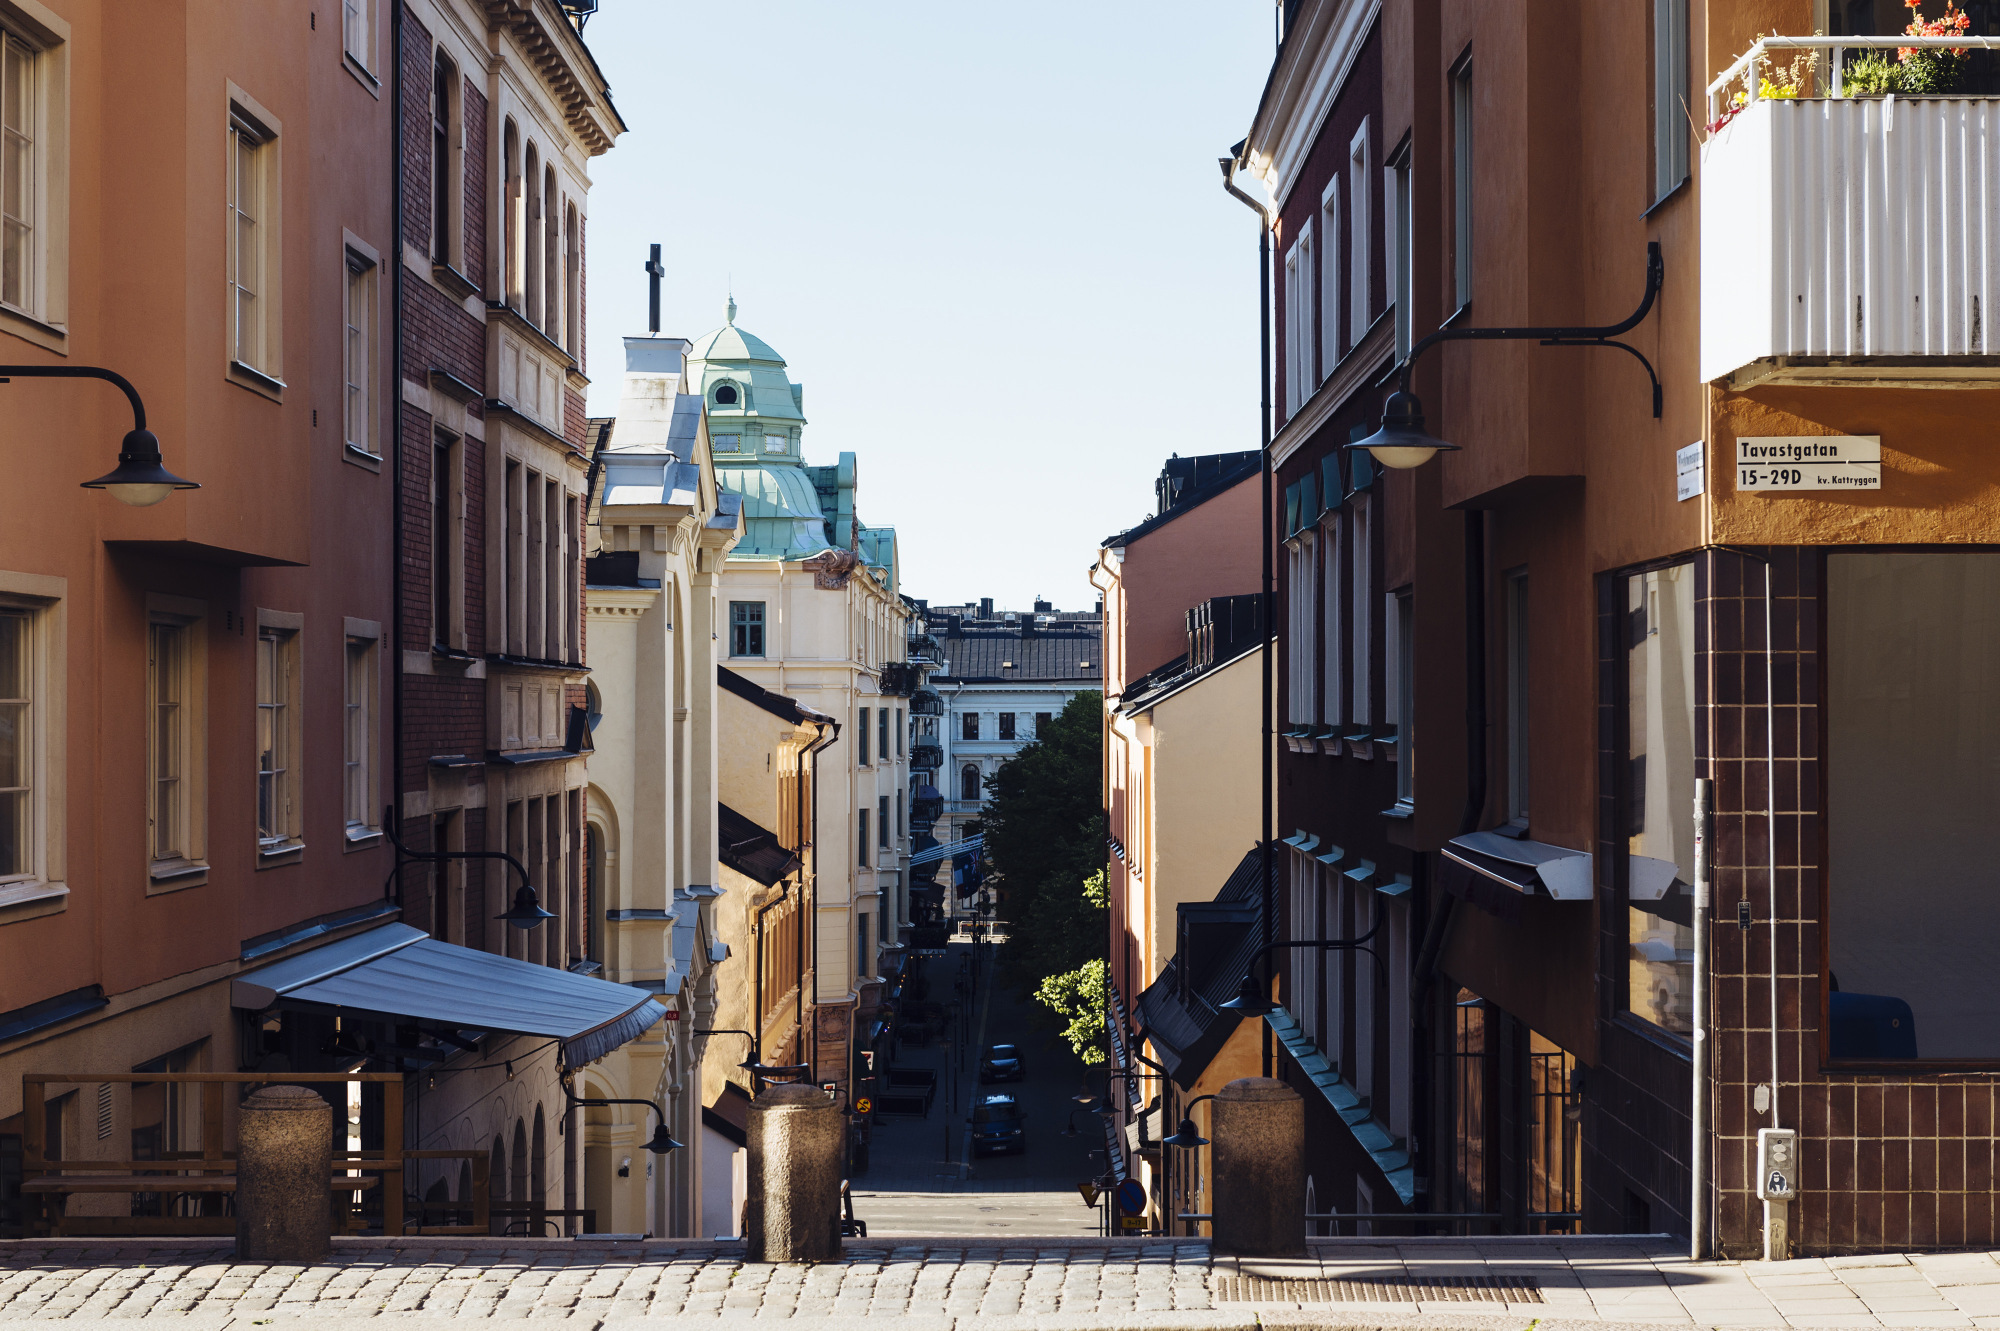 Νεα πτώση στις τιμές ακινήτων της Σουηδίας – Η μεγαλύτερη διόρθωση από το ’90